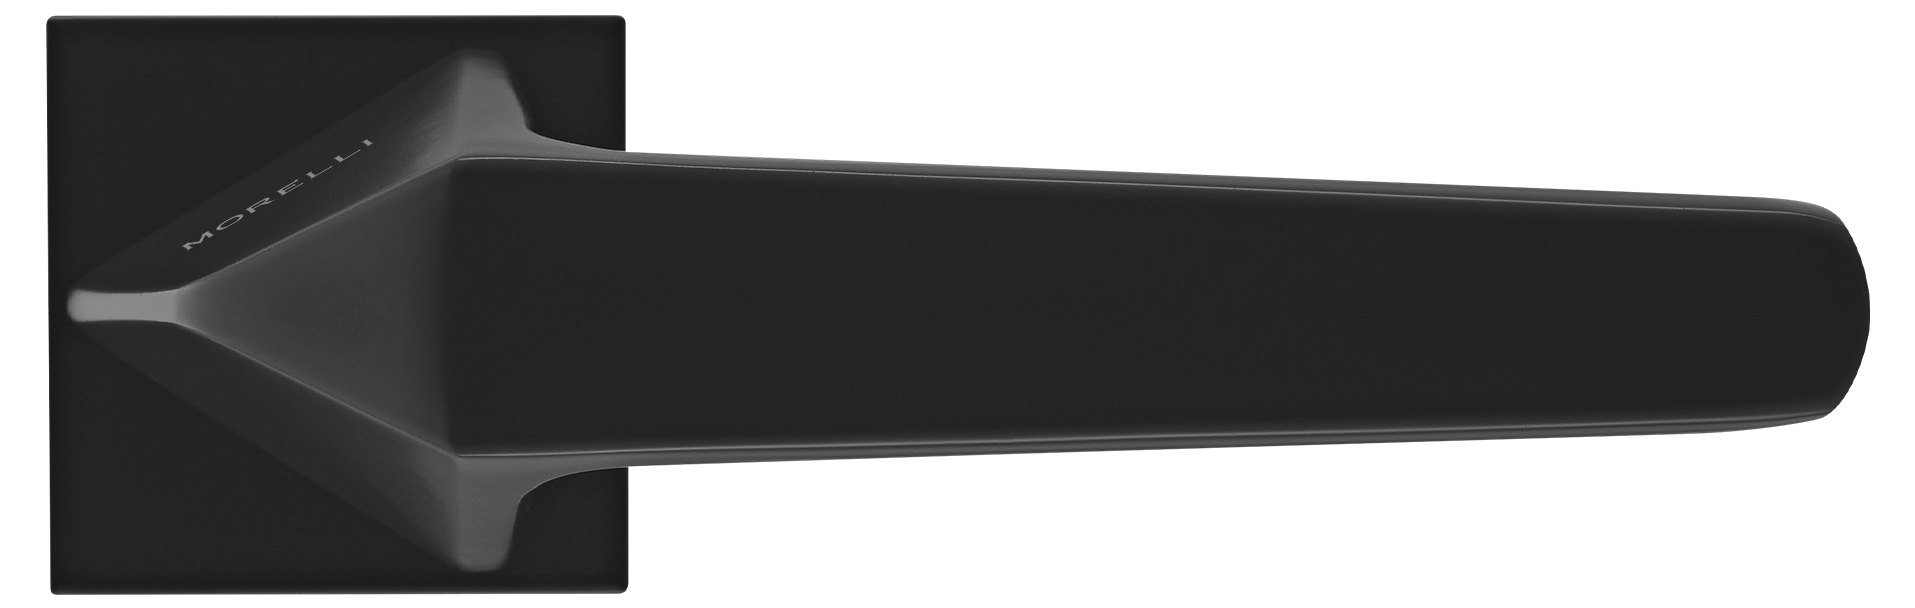 SOUK ручка дверная на квадратной розетке 6 мм, MH-55-S6 BL, цвет - черный фото купить в Южно-Сахалинске